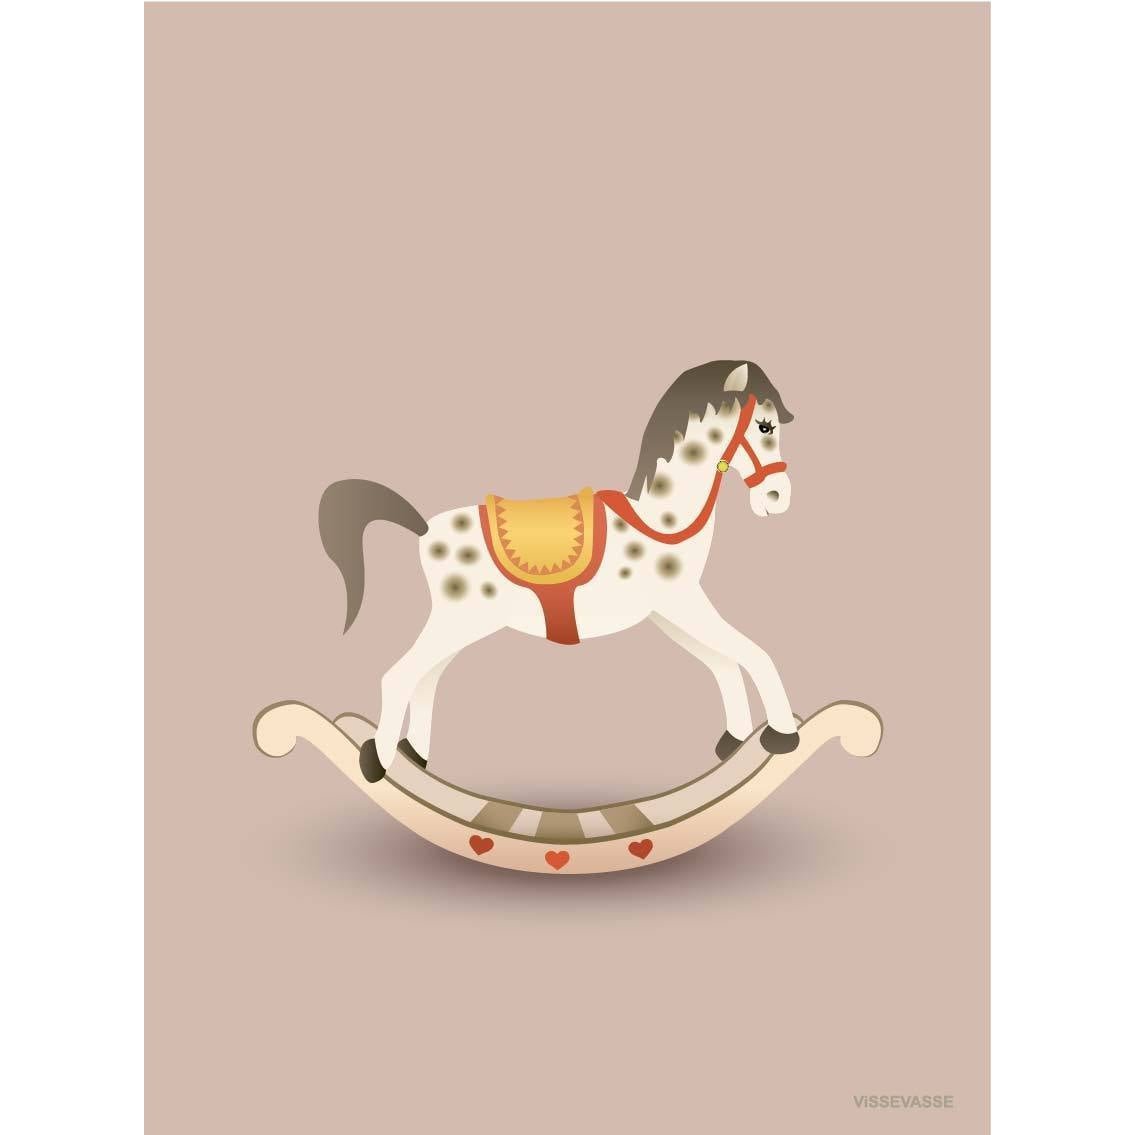 Vissevasse Rocking Horse lykønskningskort, lyserød, 10,5x15cm